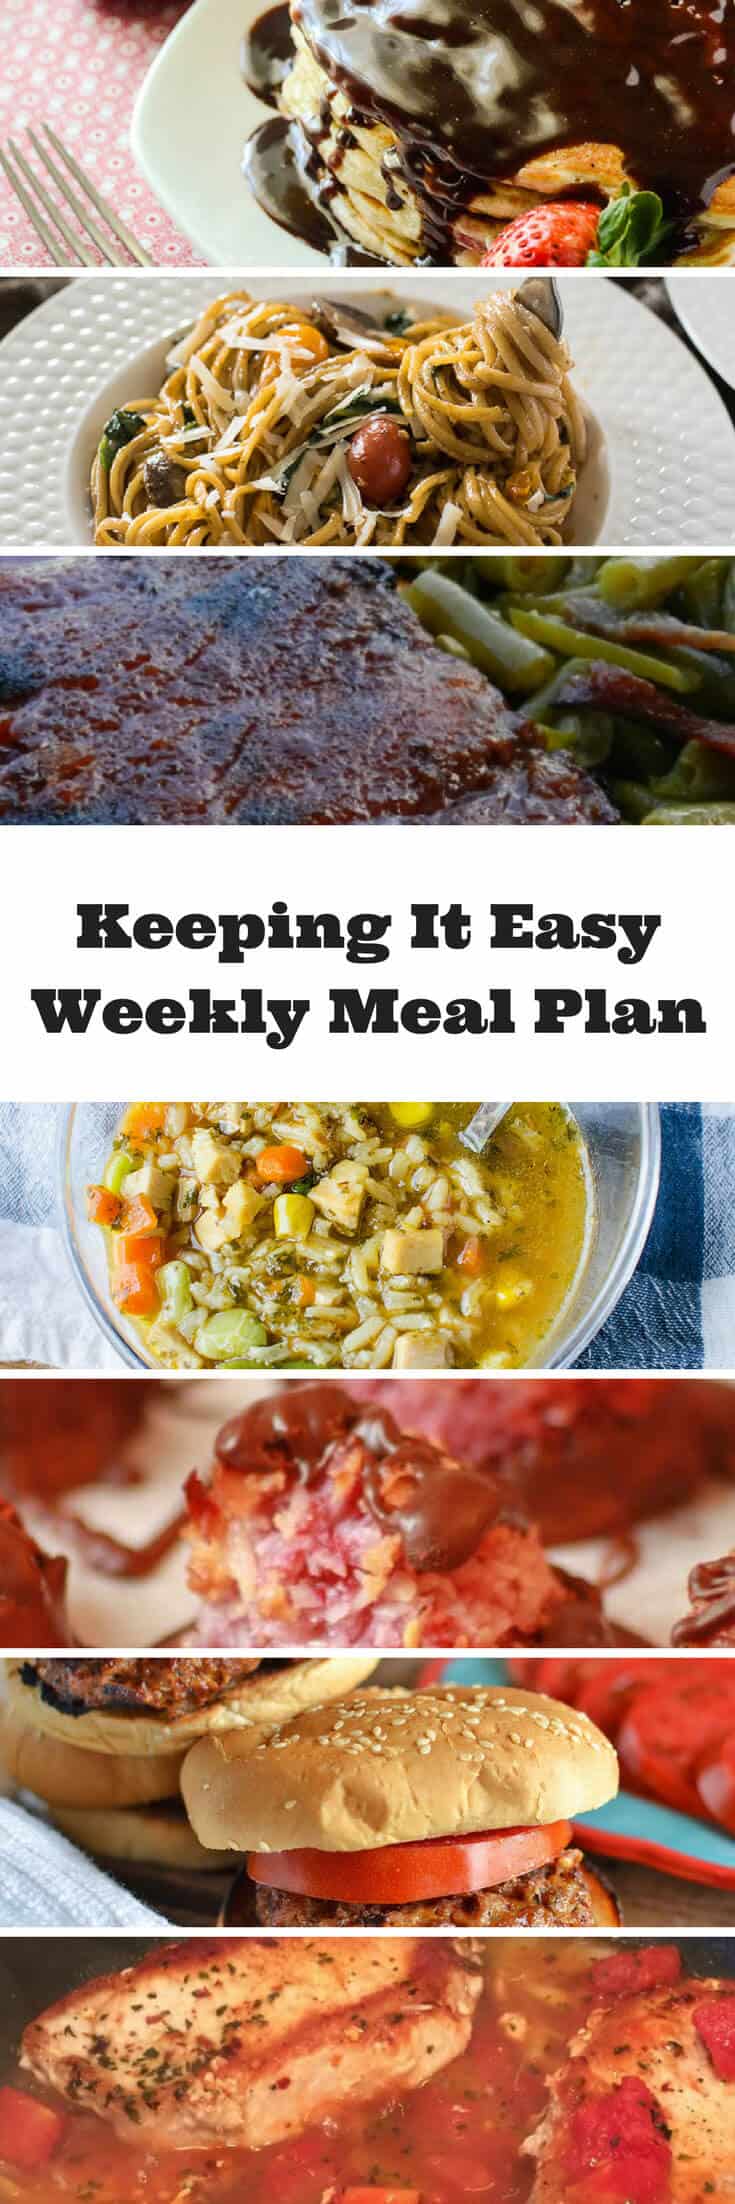 #KeepItEasy Weekly Meal Plan - Week 4